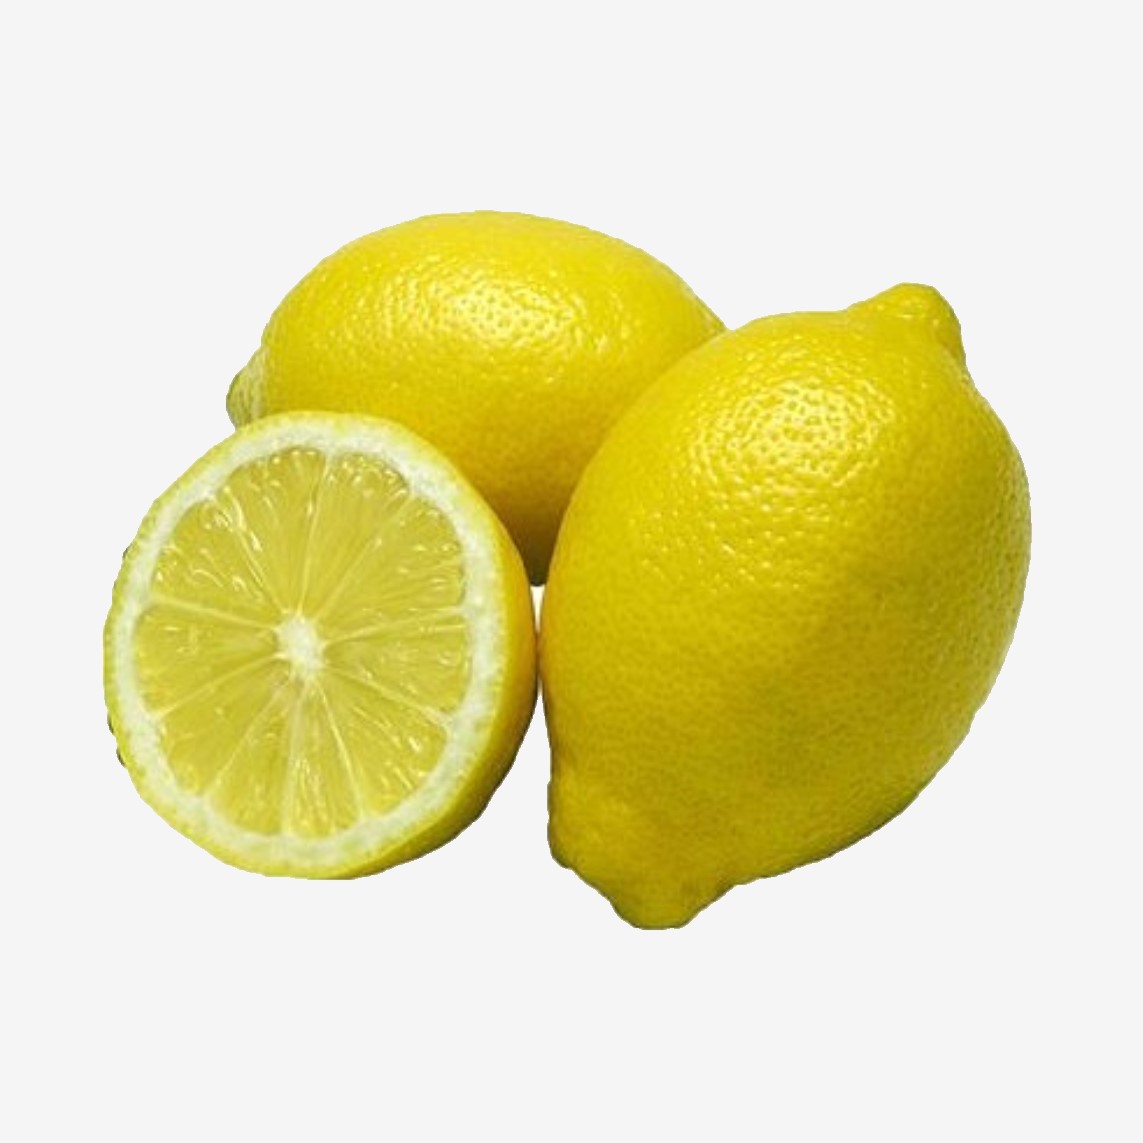 لیمو سنگی دزفول وب سایت گل میوه